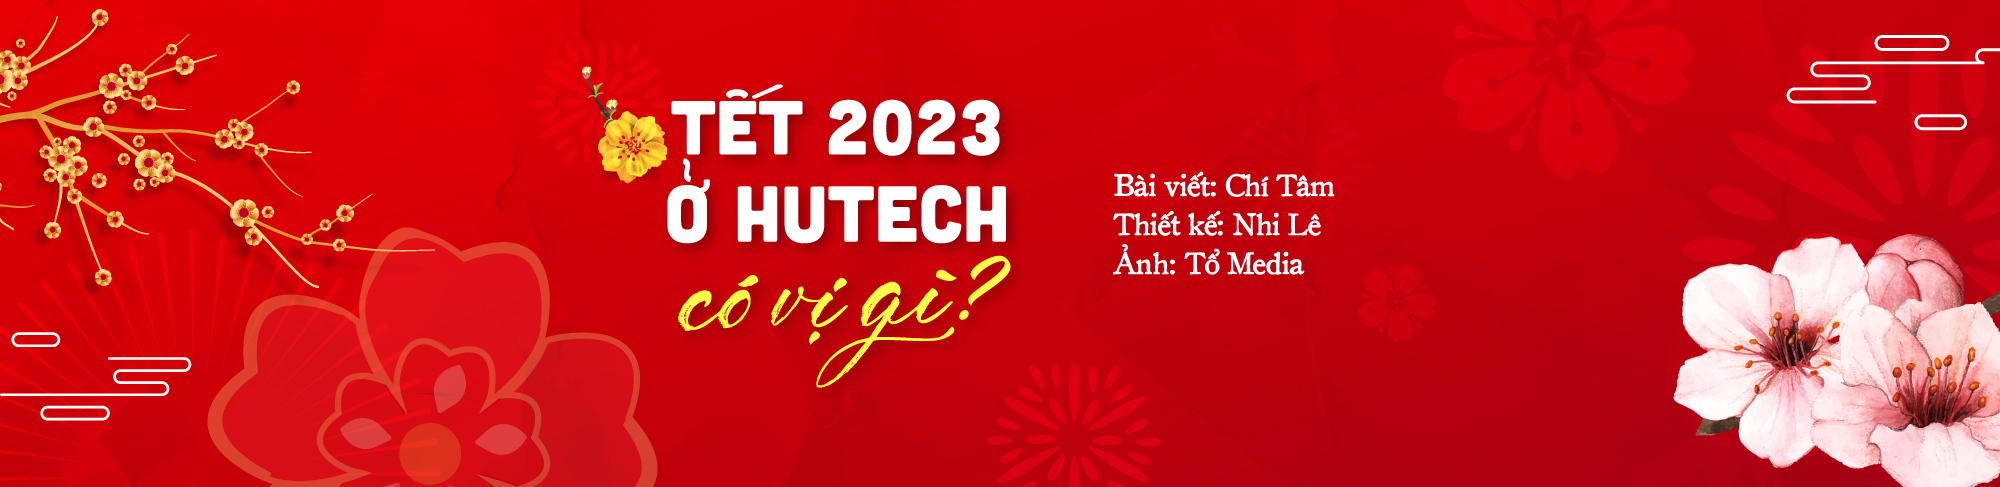 Tết 2023 ở HUTECH có vị gì? 157